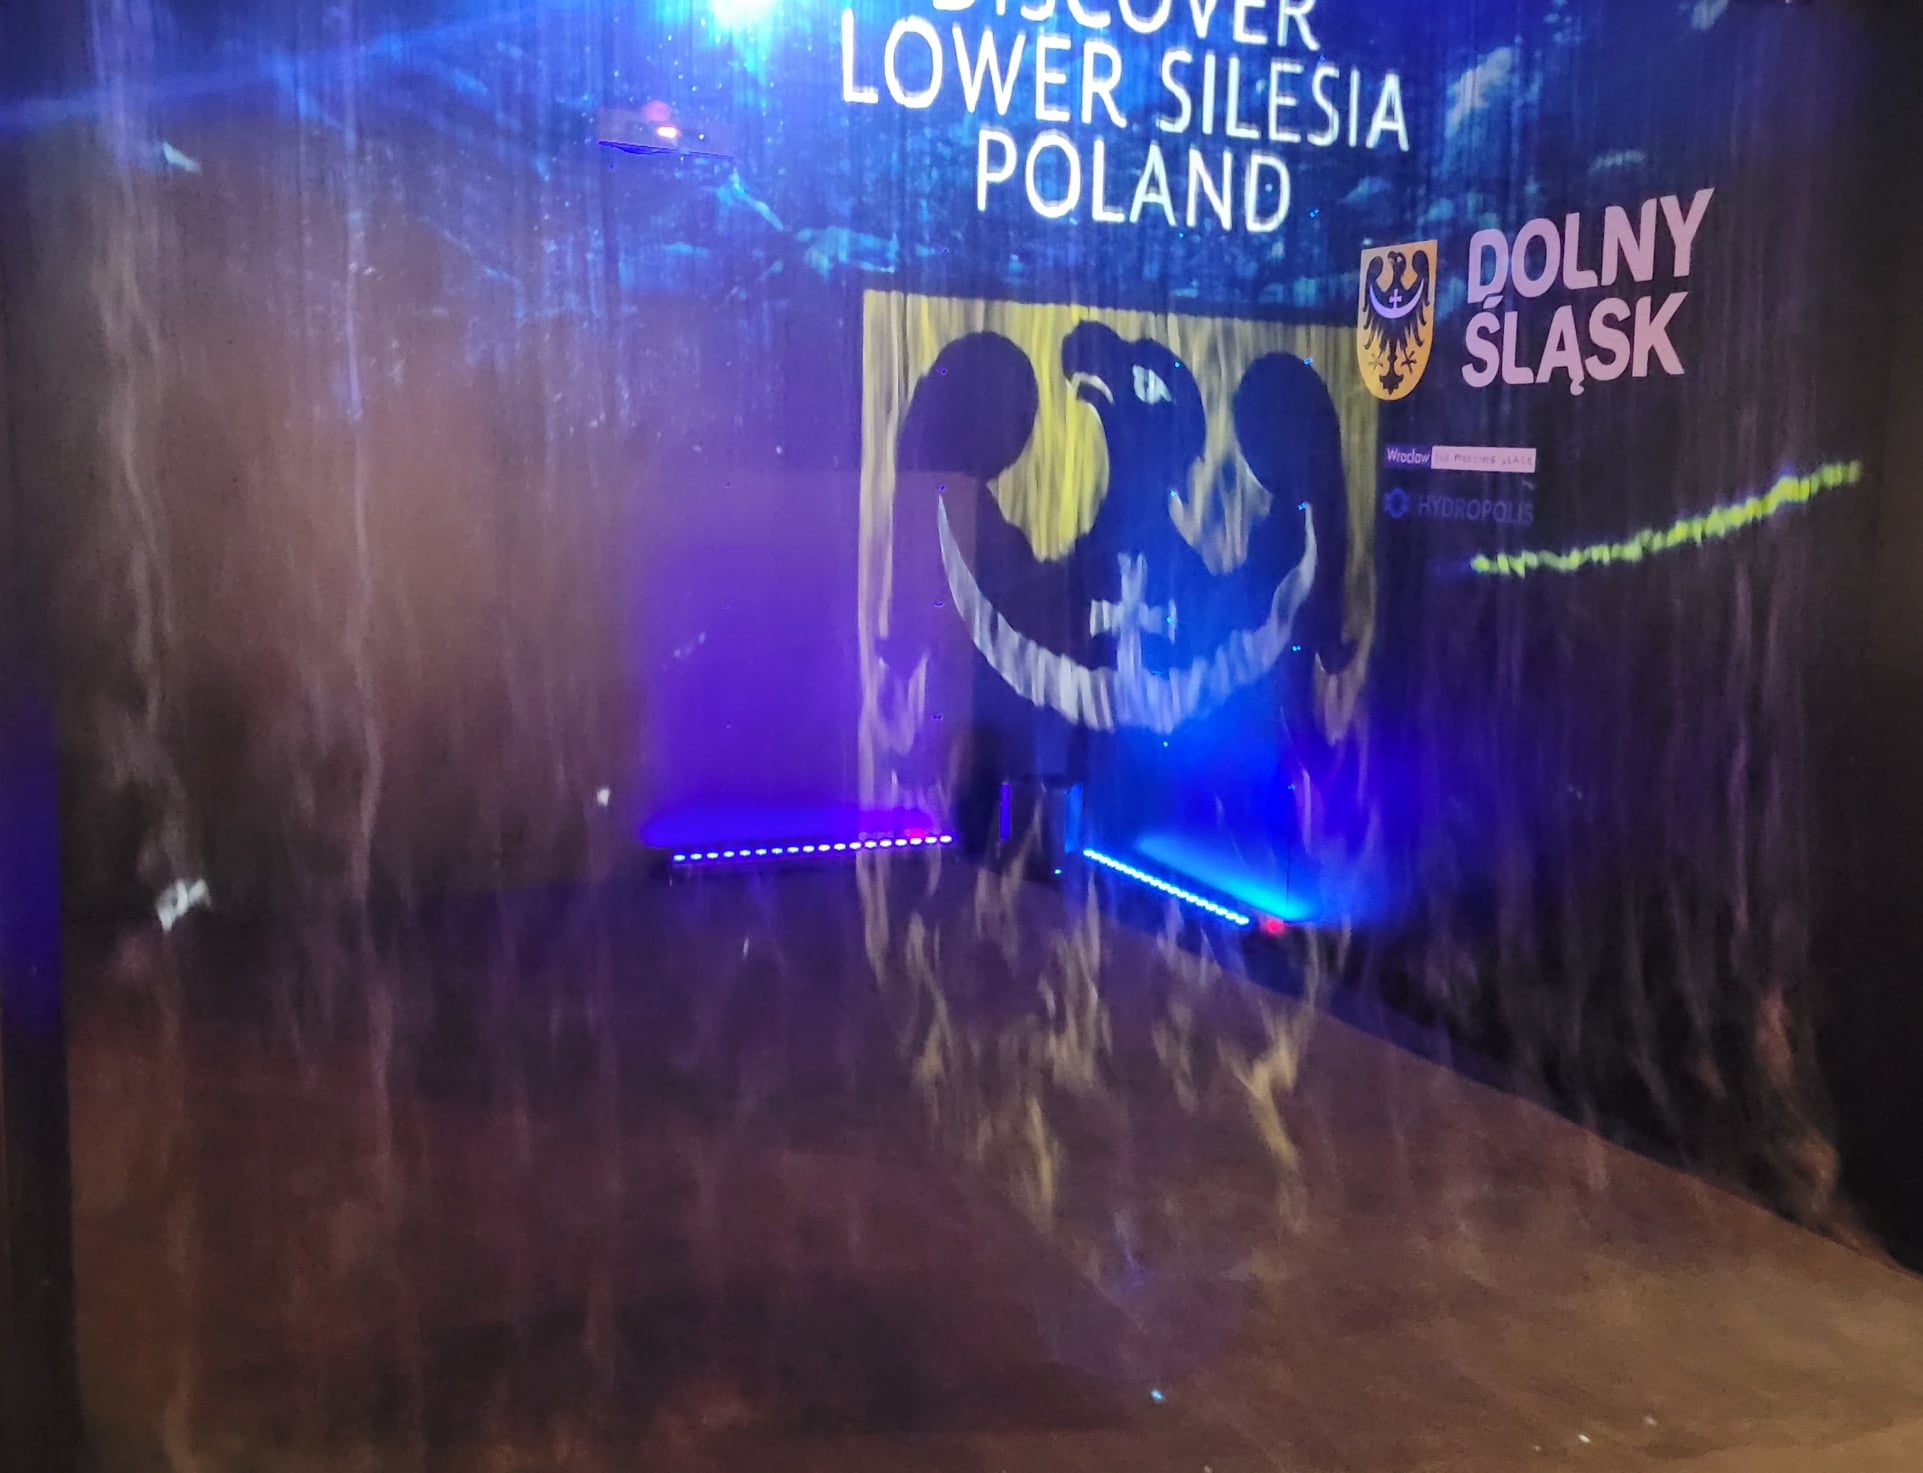 Element wystawy. Hologram z herbem województwa dolnośląskiego